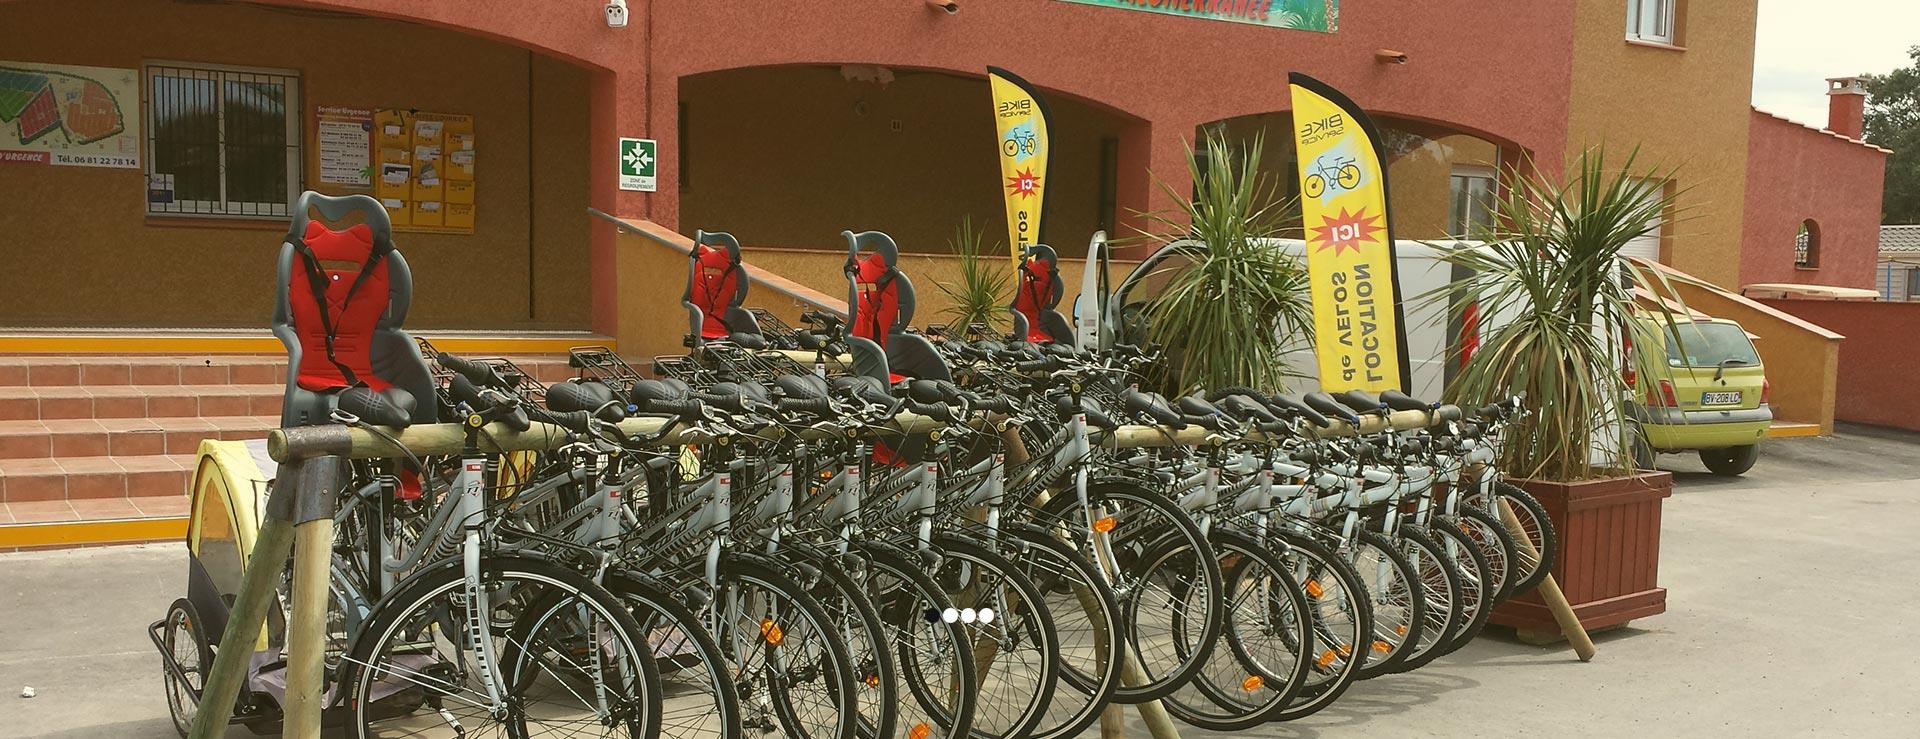 Accessoires pour vélo disponible à la location